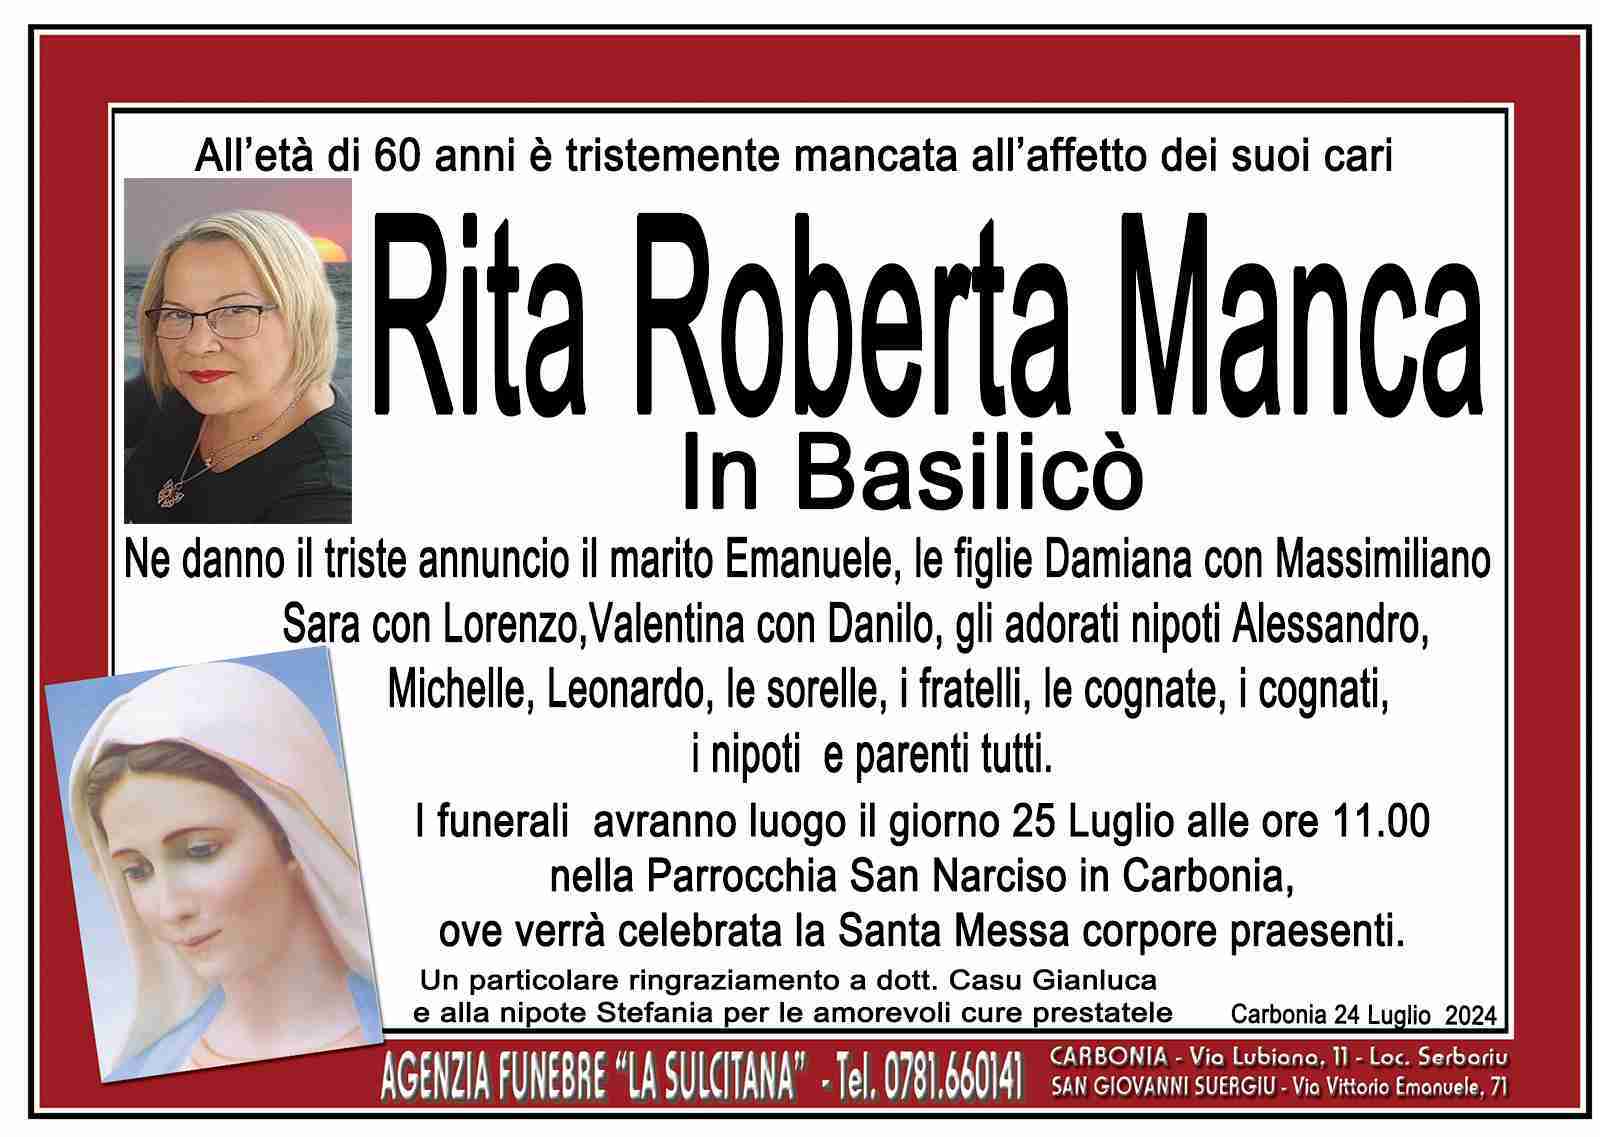 Rita Roberta Manca